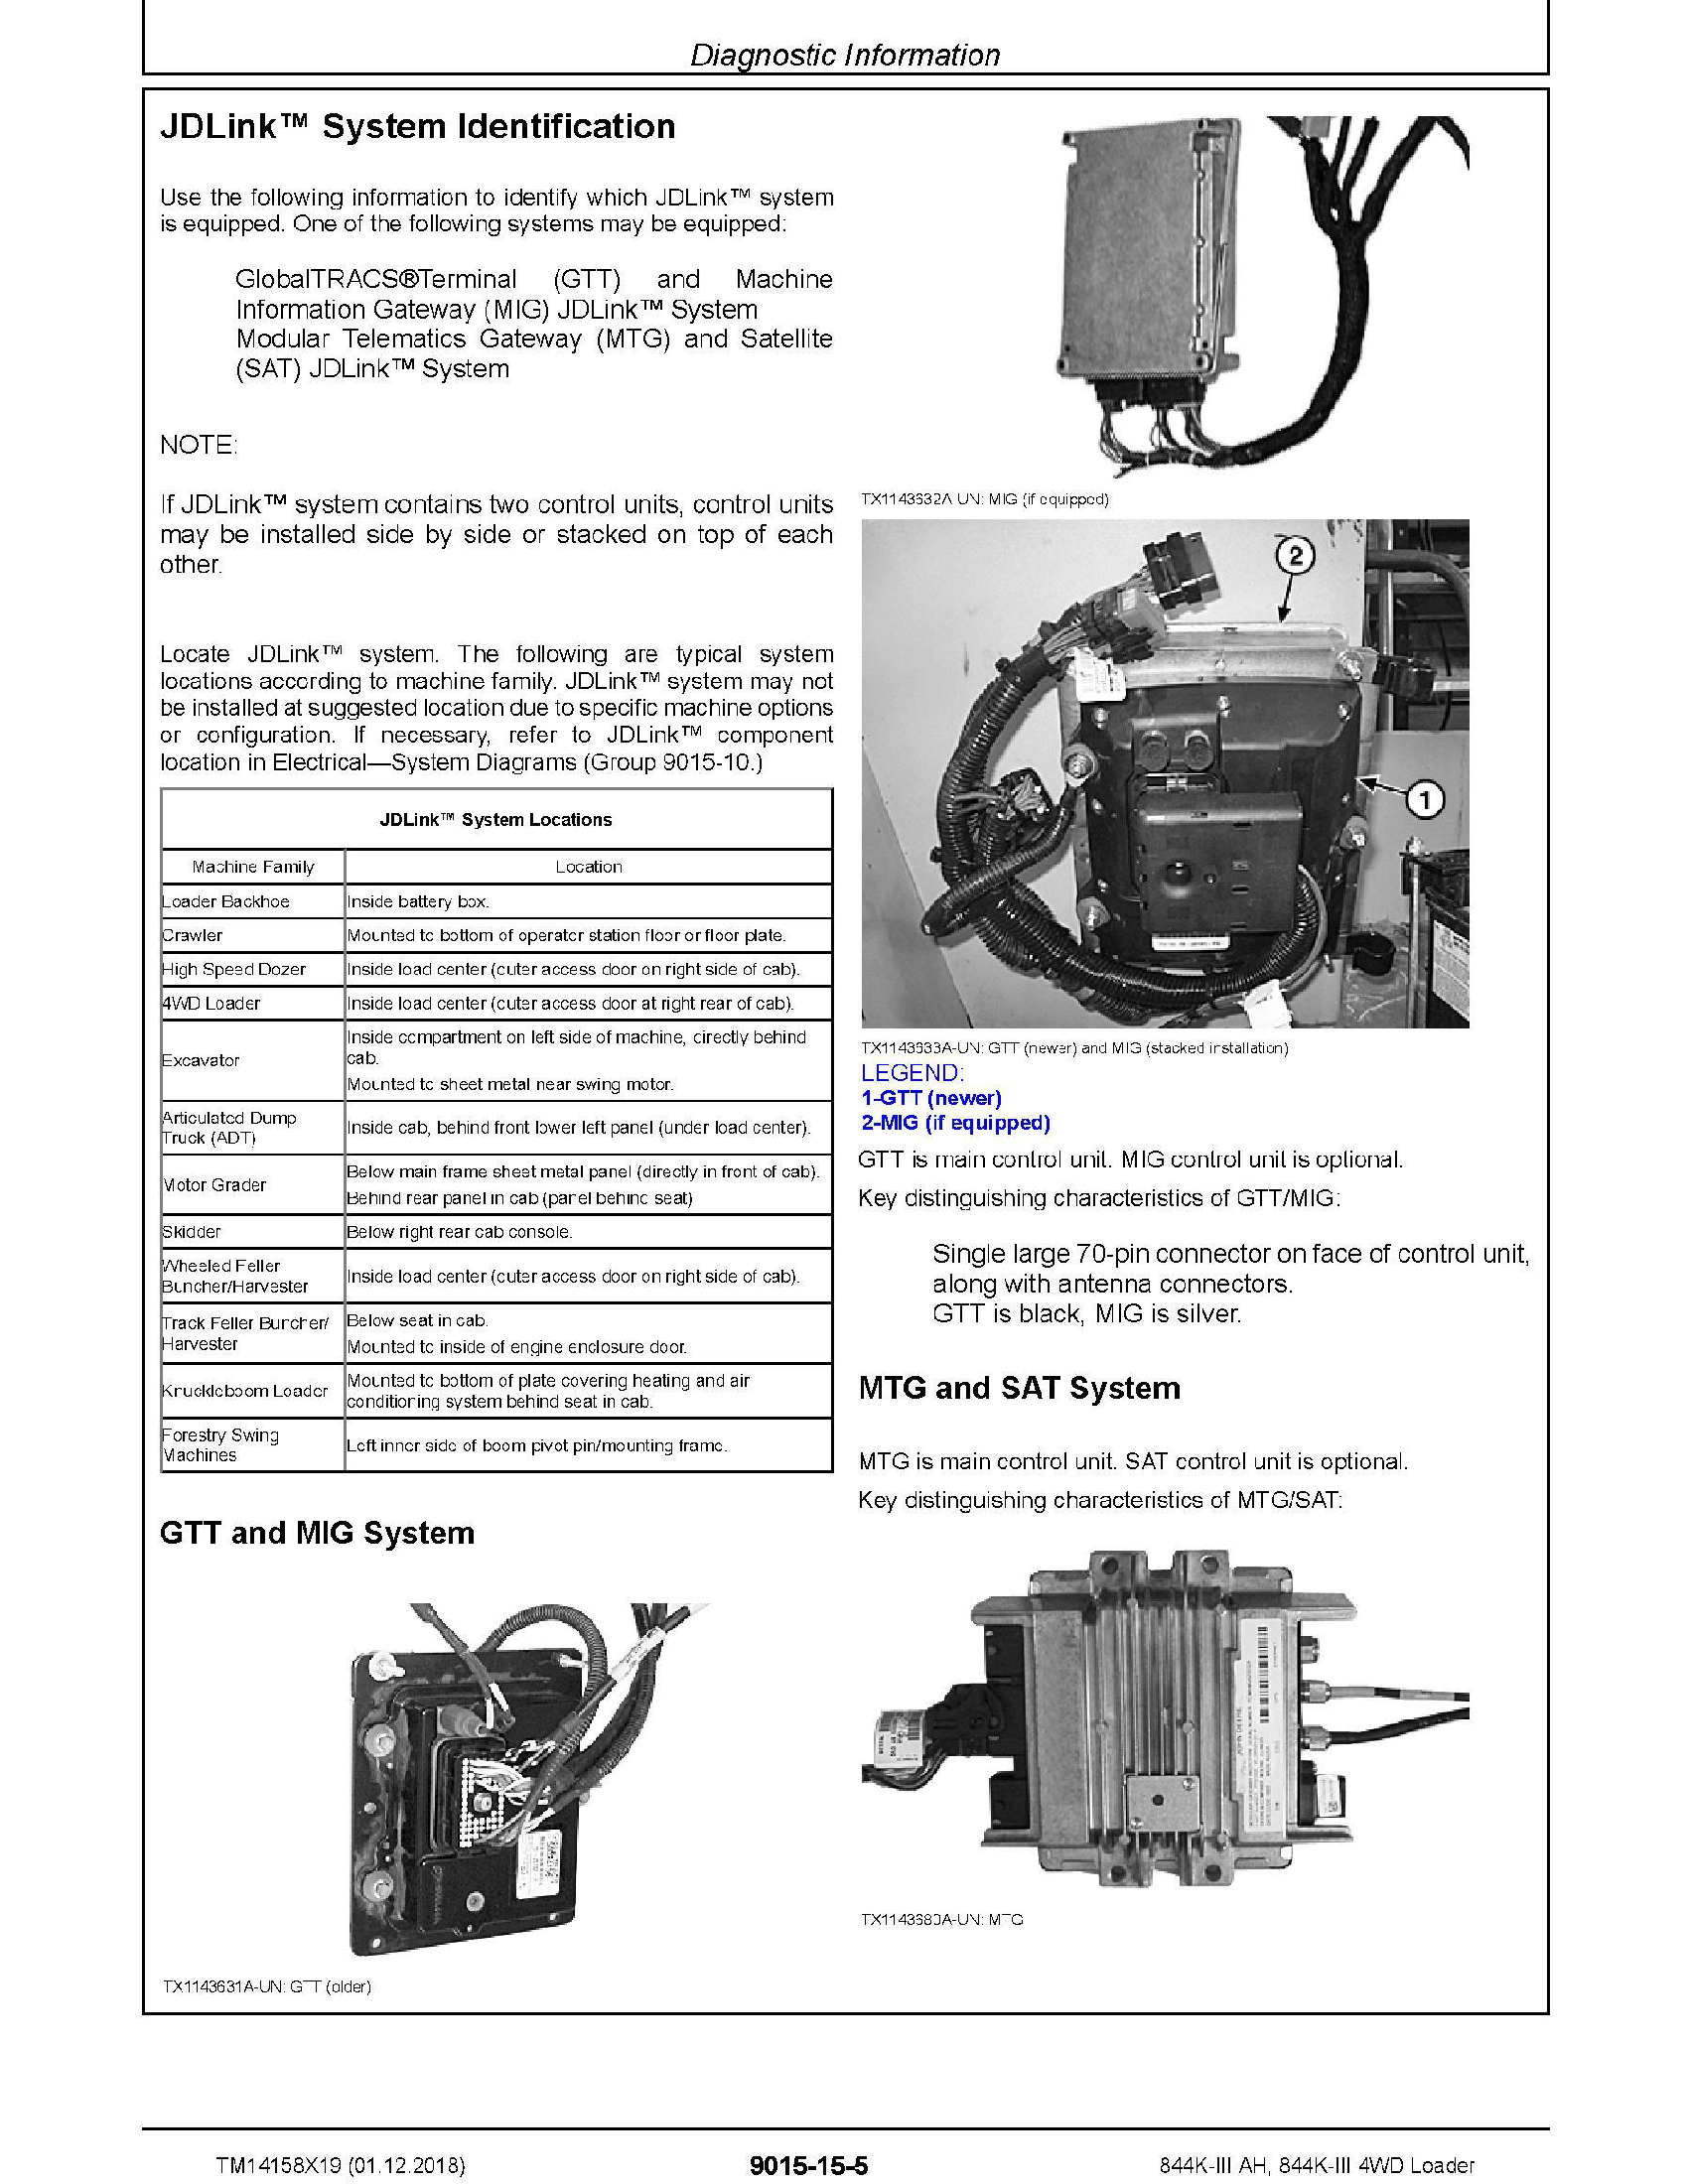 John Deere 764 manual pdf